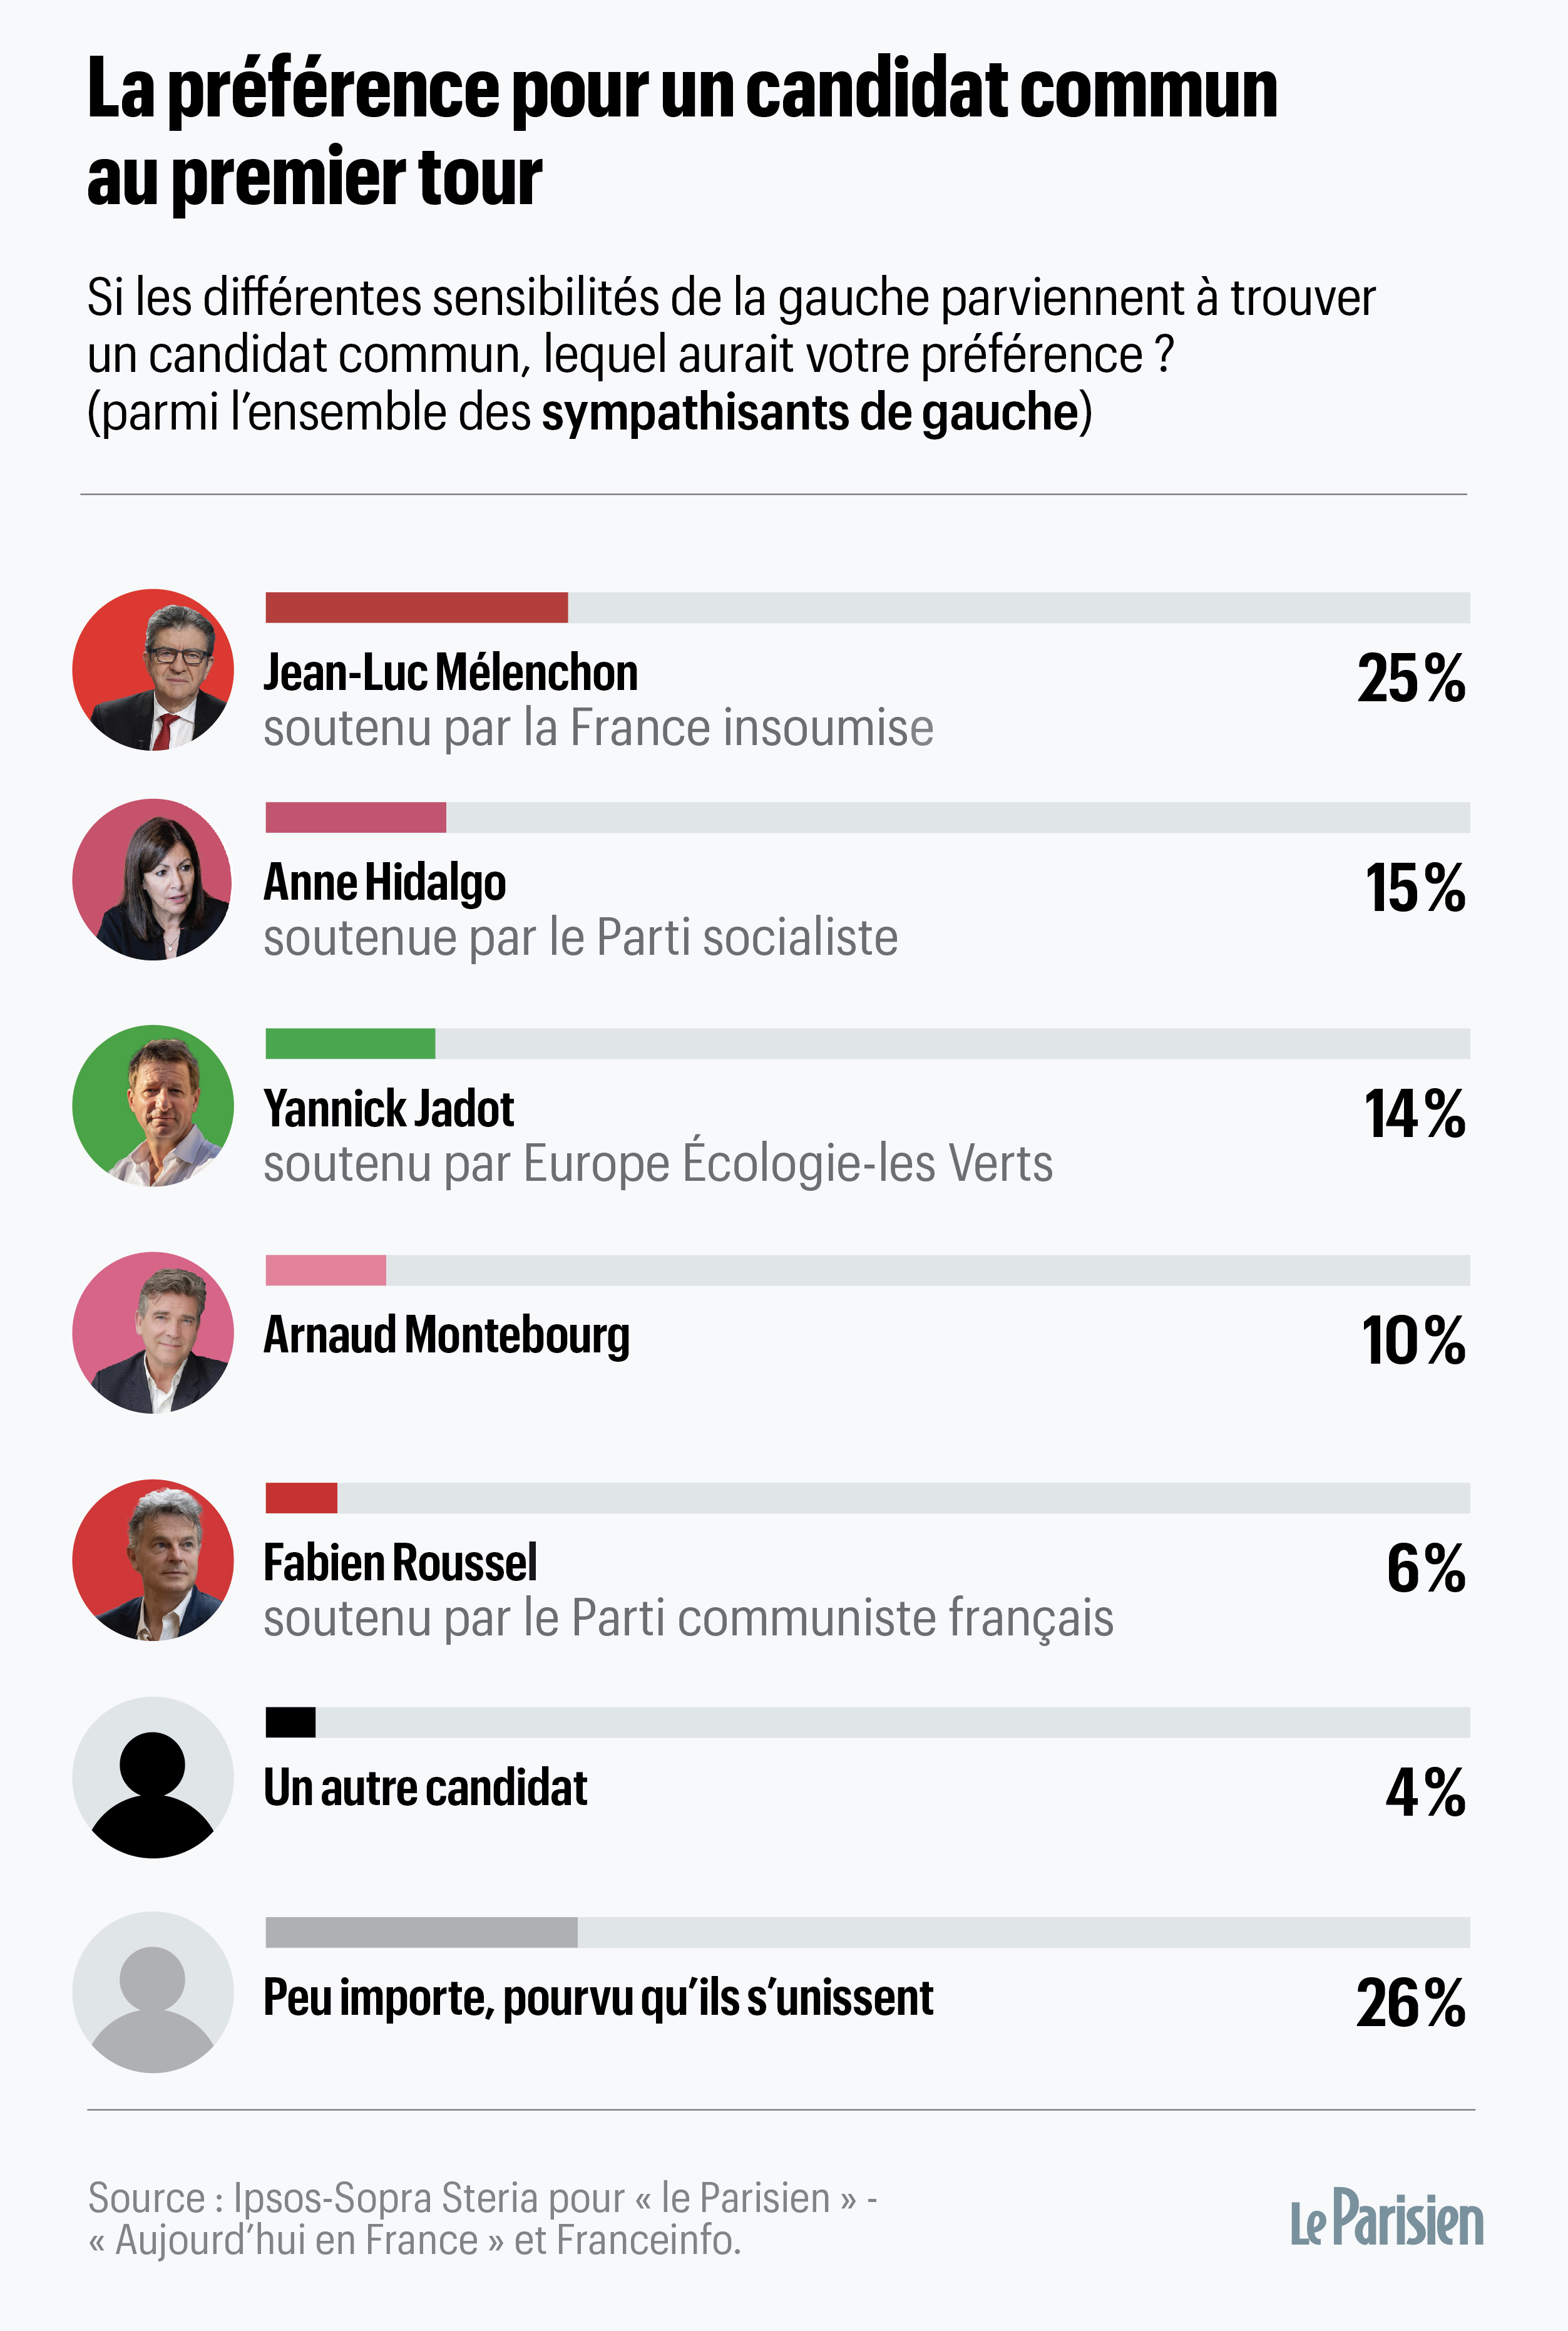 presidentielle 66 des sympathisants de gauche souhaitent qu un seul candidat les represente en 2022 le parisien